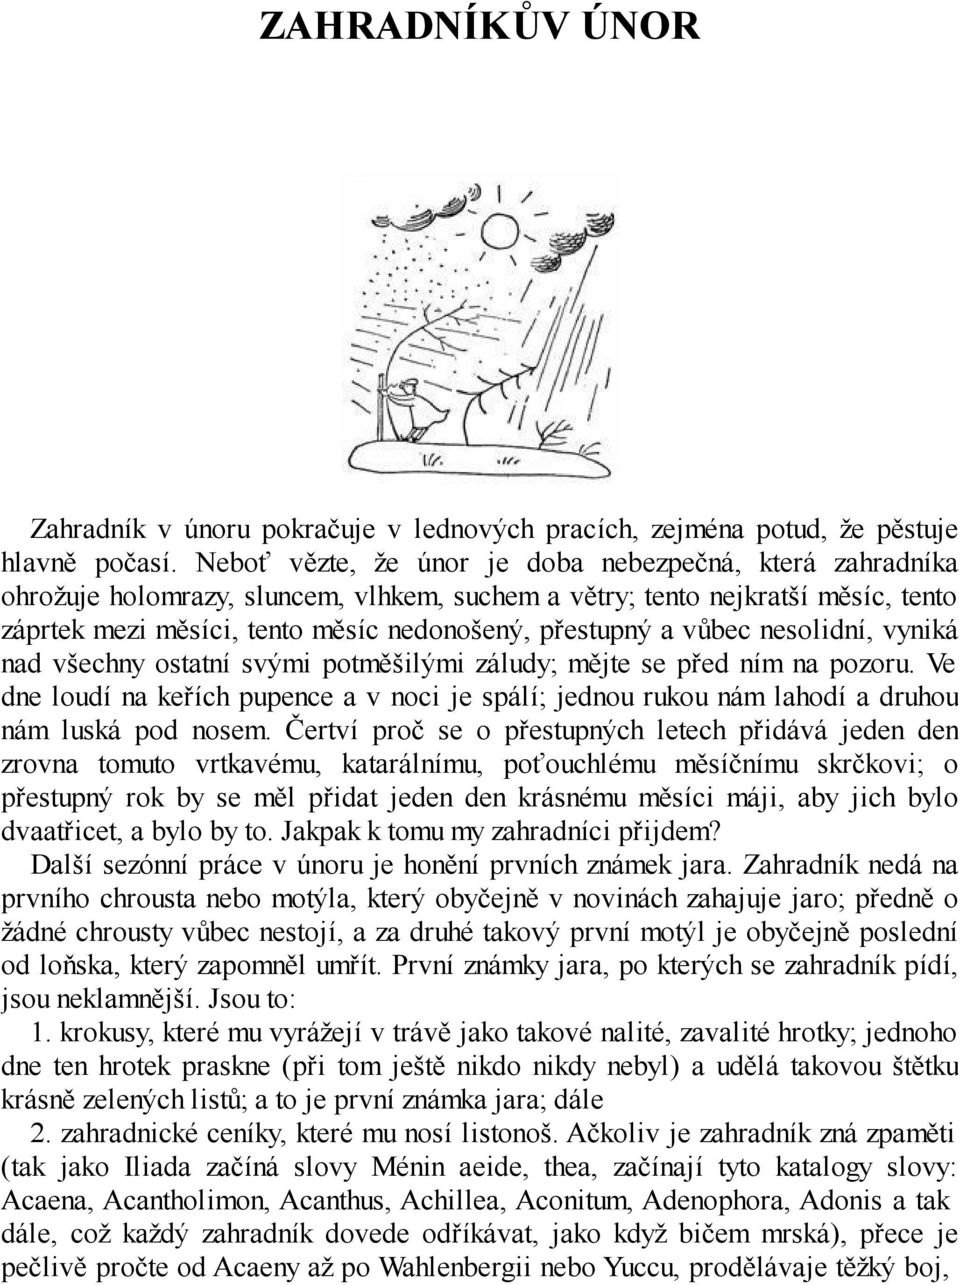 Karel Čapek ZAHRADNÍKŮV ROK - PDF Stažení zdarma